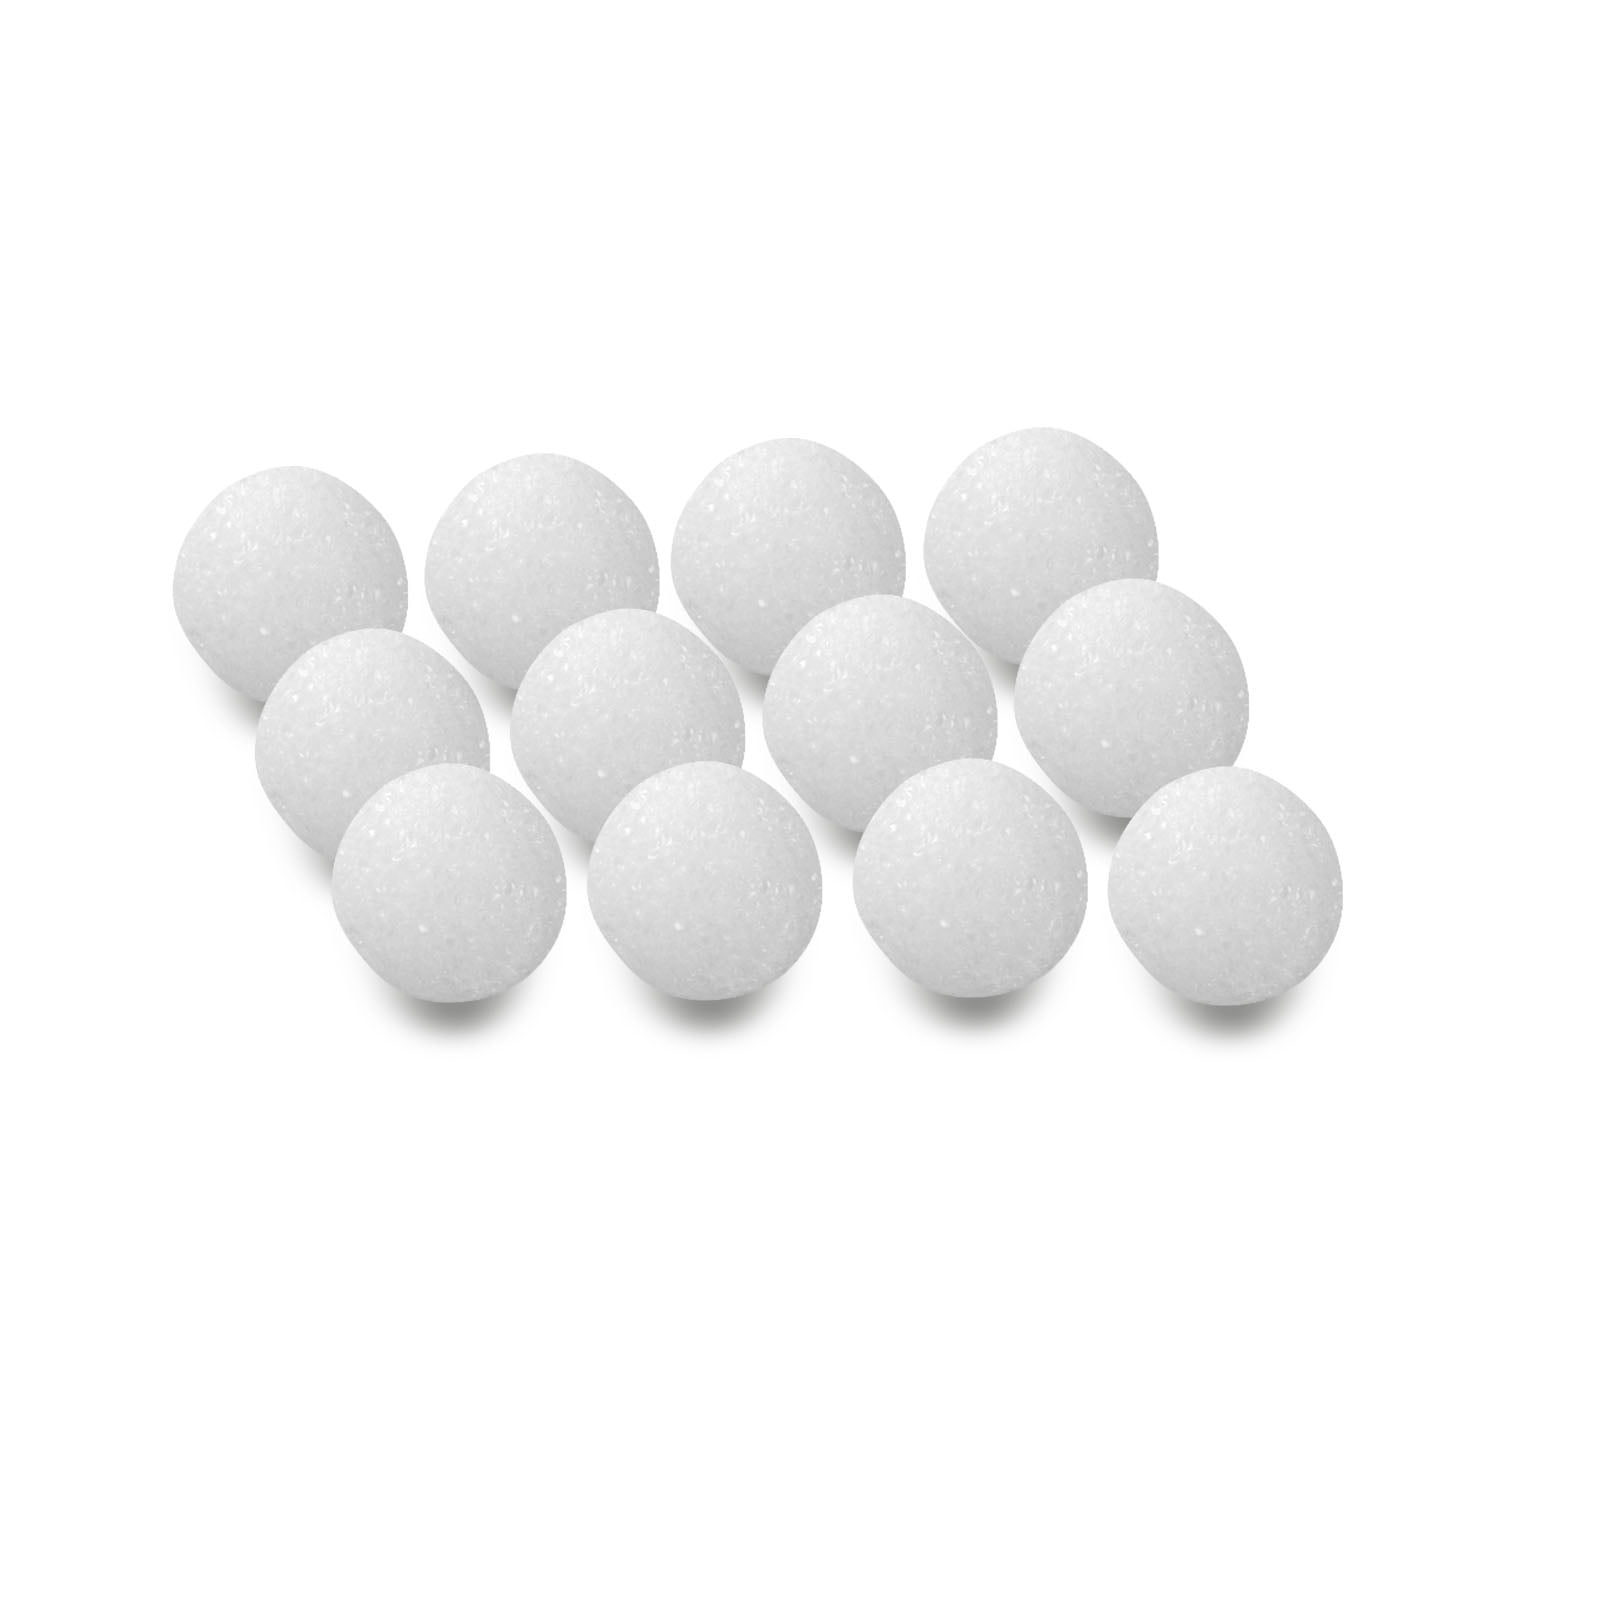 Hygloss Styrofoam, 1.5 Balls, 12 per Pack, 6 Packs